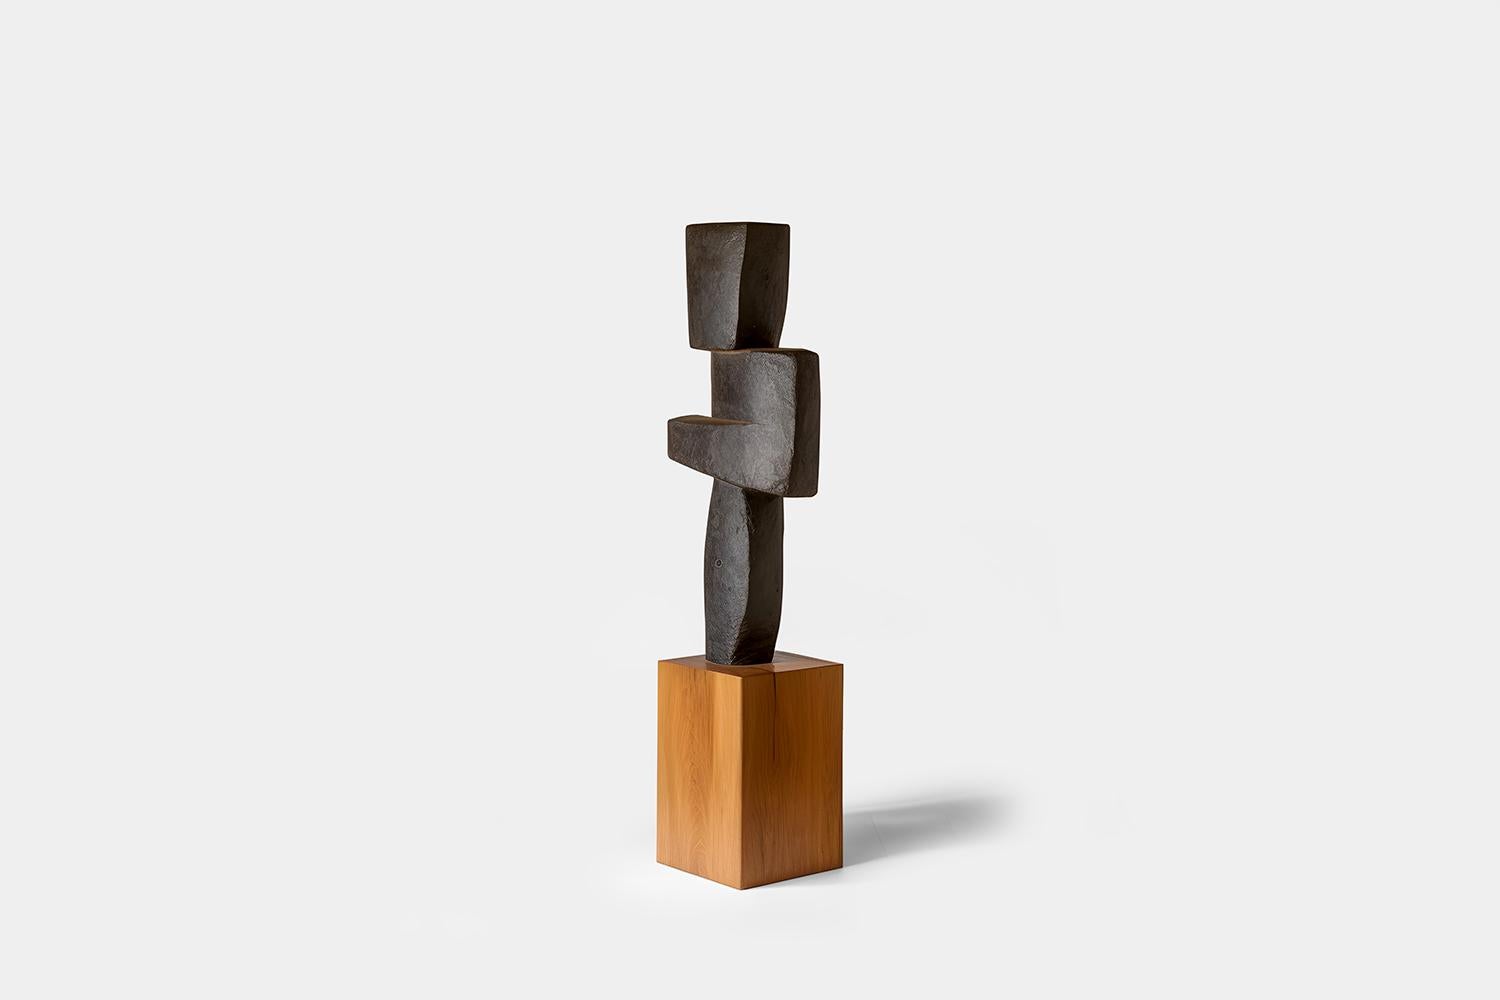 Sculpture biomorphique en bois sculpté dans le style d'Isamu Noguchi, Unseen Force 20 par Joel Escalona

Cette sculpture monolithique, conçue par l'artiste talentueux Joel Escalona, est un exemple impressionnant de la beauté de l'artisanat. Réalisée